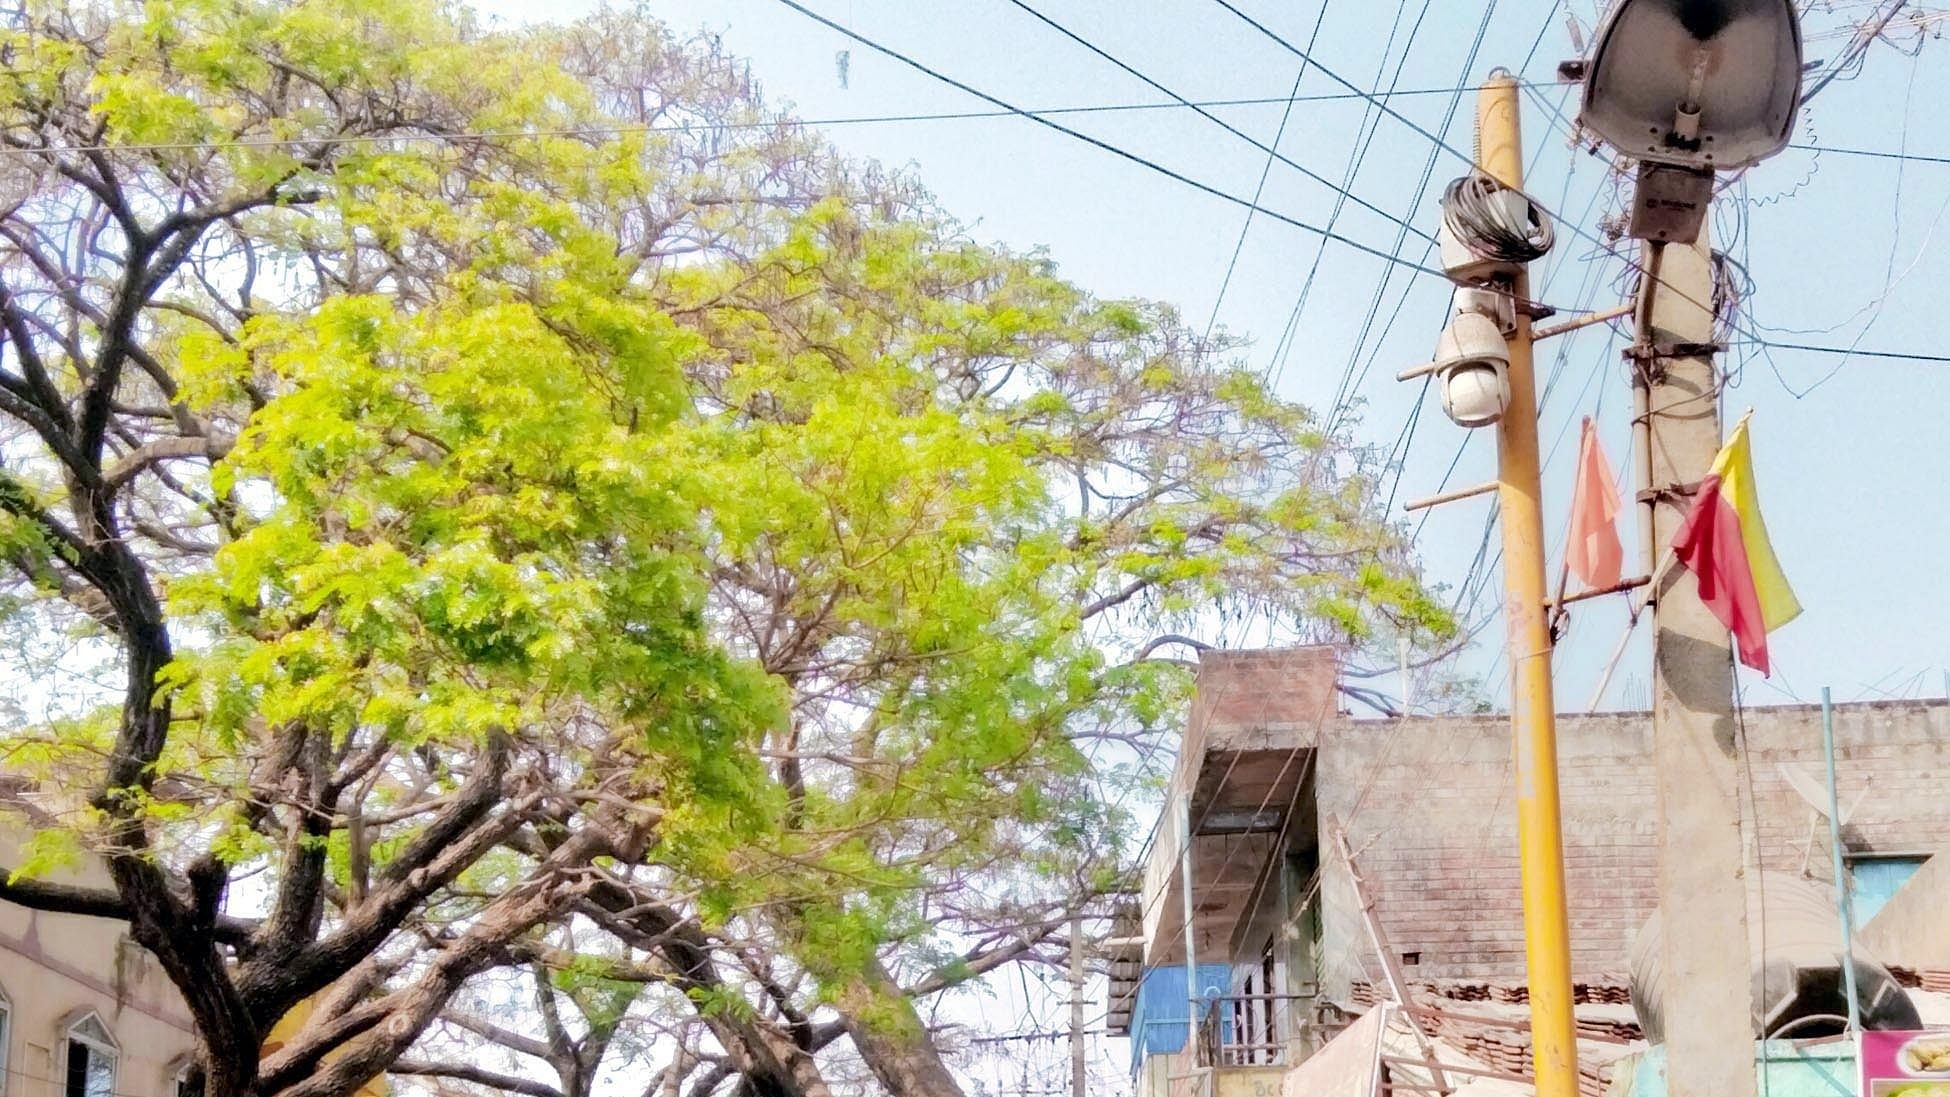 ಸವಣೂರಿನ ಪೊಲೀಸ್‌ ಠಾಣೆ ರಸ್ತೆಯಲ್ಲಿರುವ ಸಿಸಿಟಿವಿ ಕ್ಯಾಮೆರಾ ಹಾಳಾಗಿದೆ 